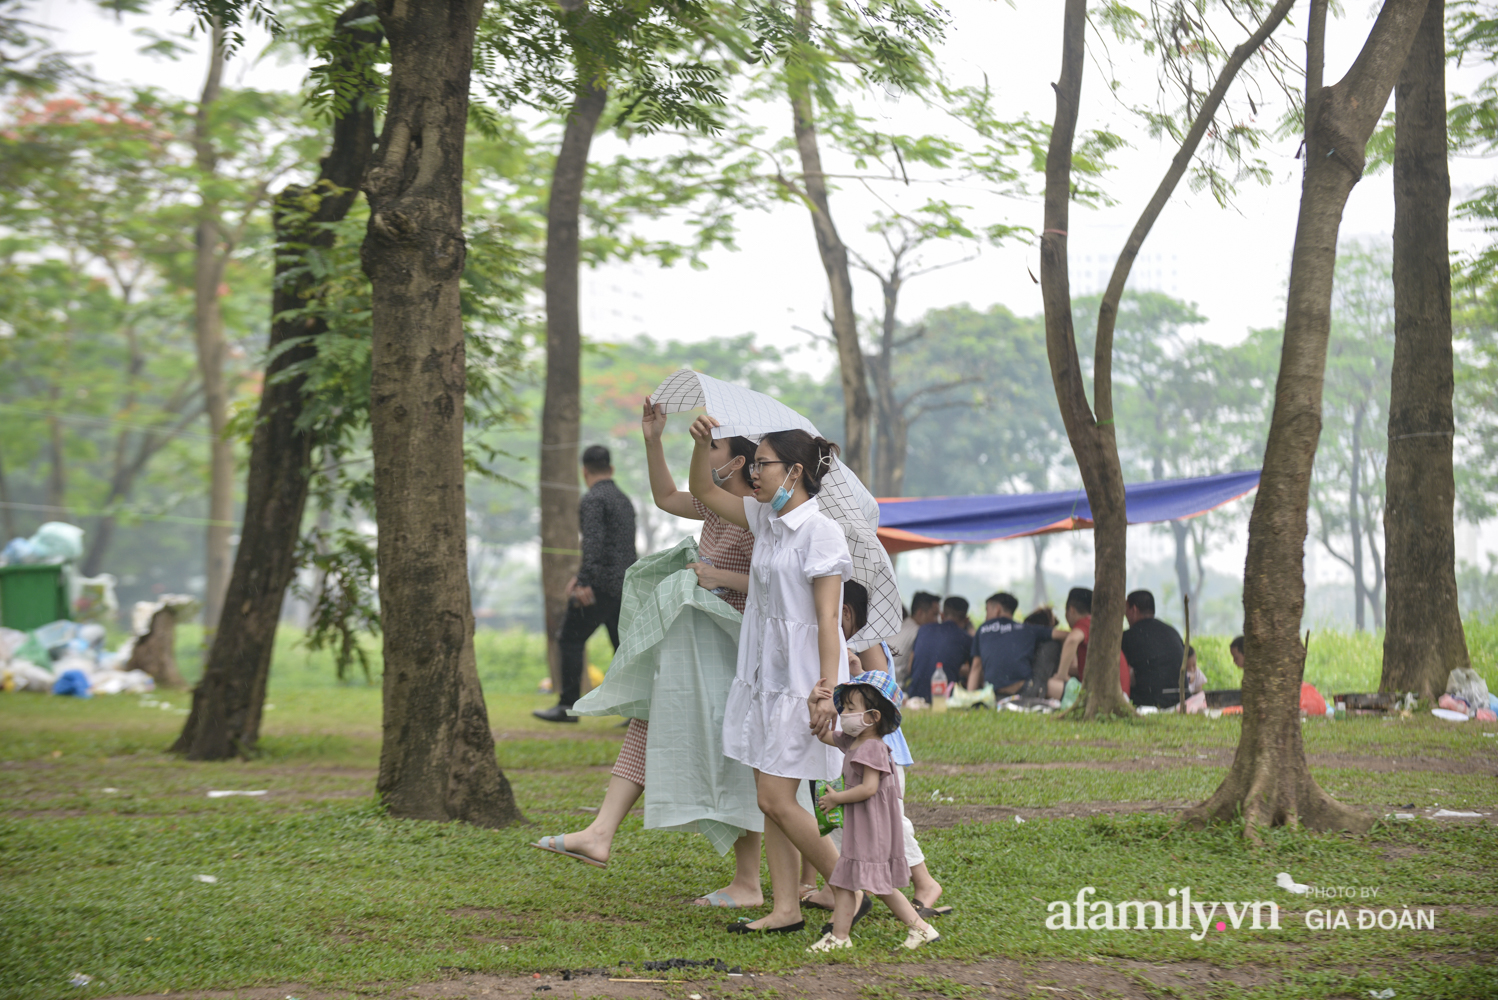 Công viên Yên Sở đông nghịt người cắm trại, vui chơi ngày nghỉ lễ - Ảnh 7.